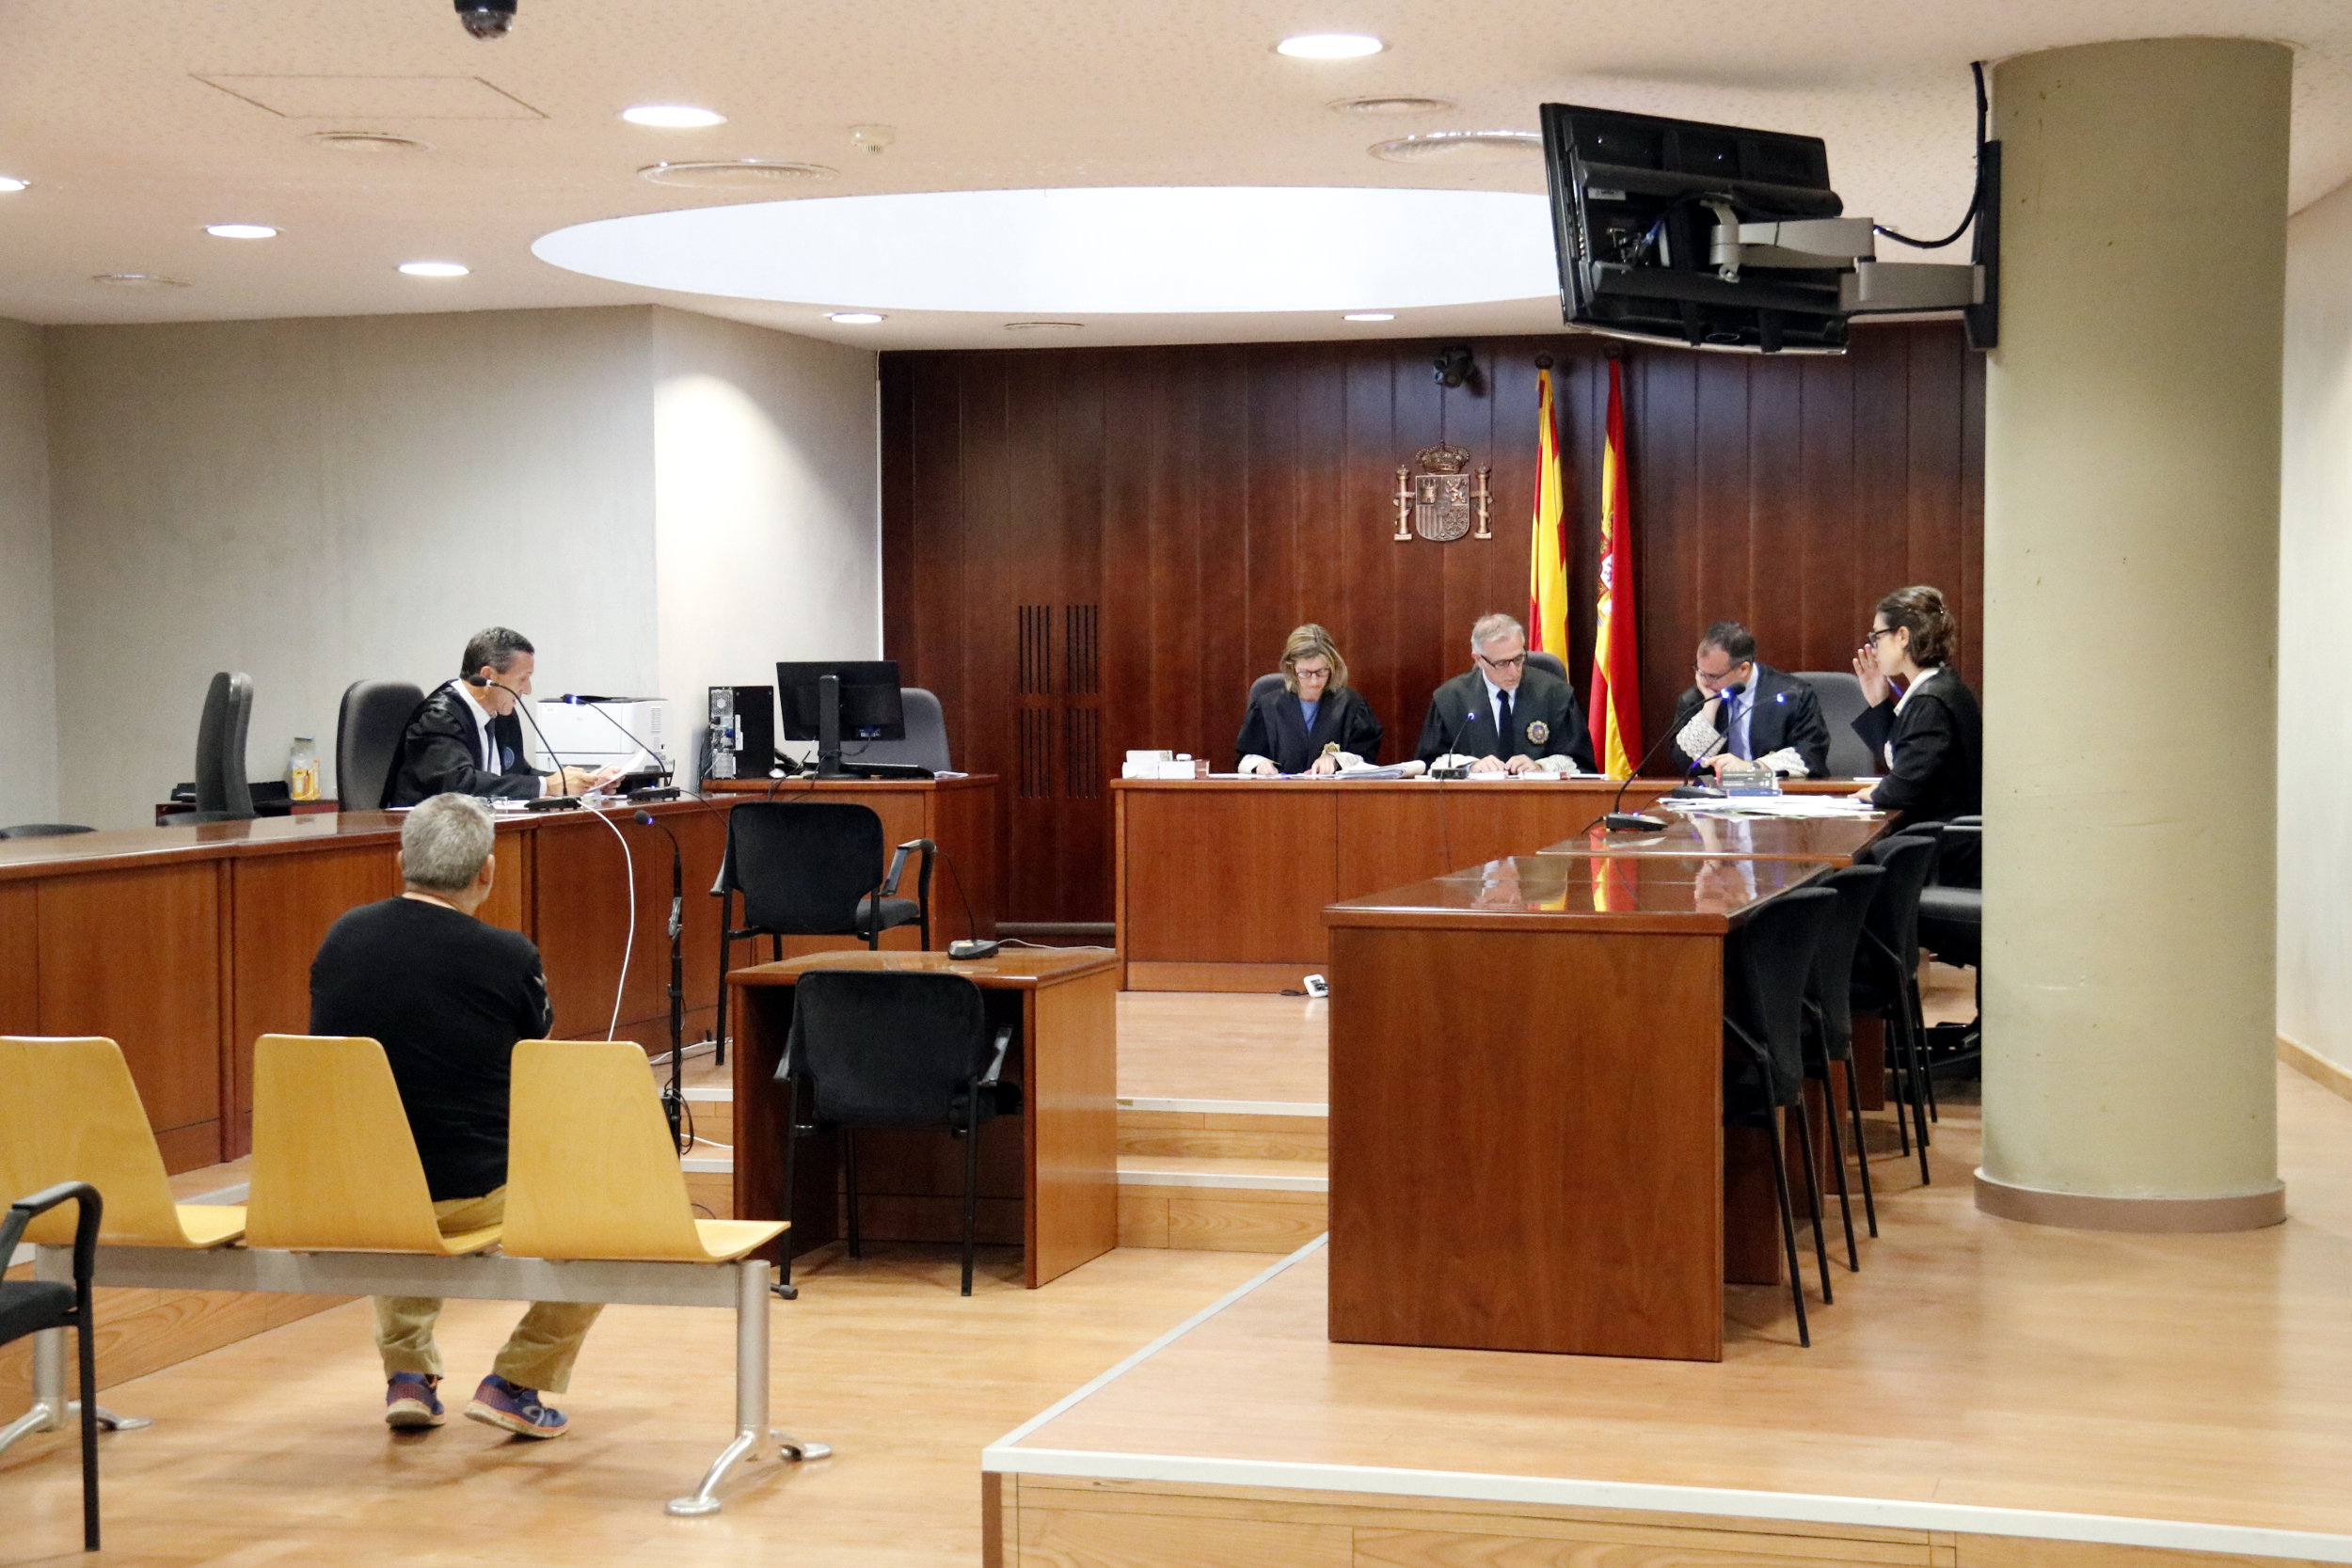 Imatge general del judici a un acusat de violar la filla de la seva cosina. Imatge del 18 de maig de 2017 a l'Audiència de Lleida. (Horitzontal)